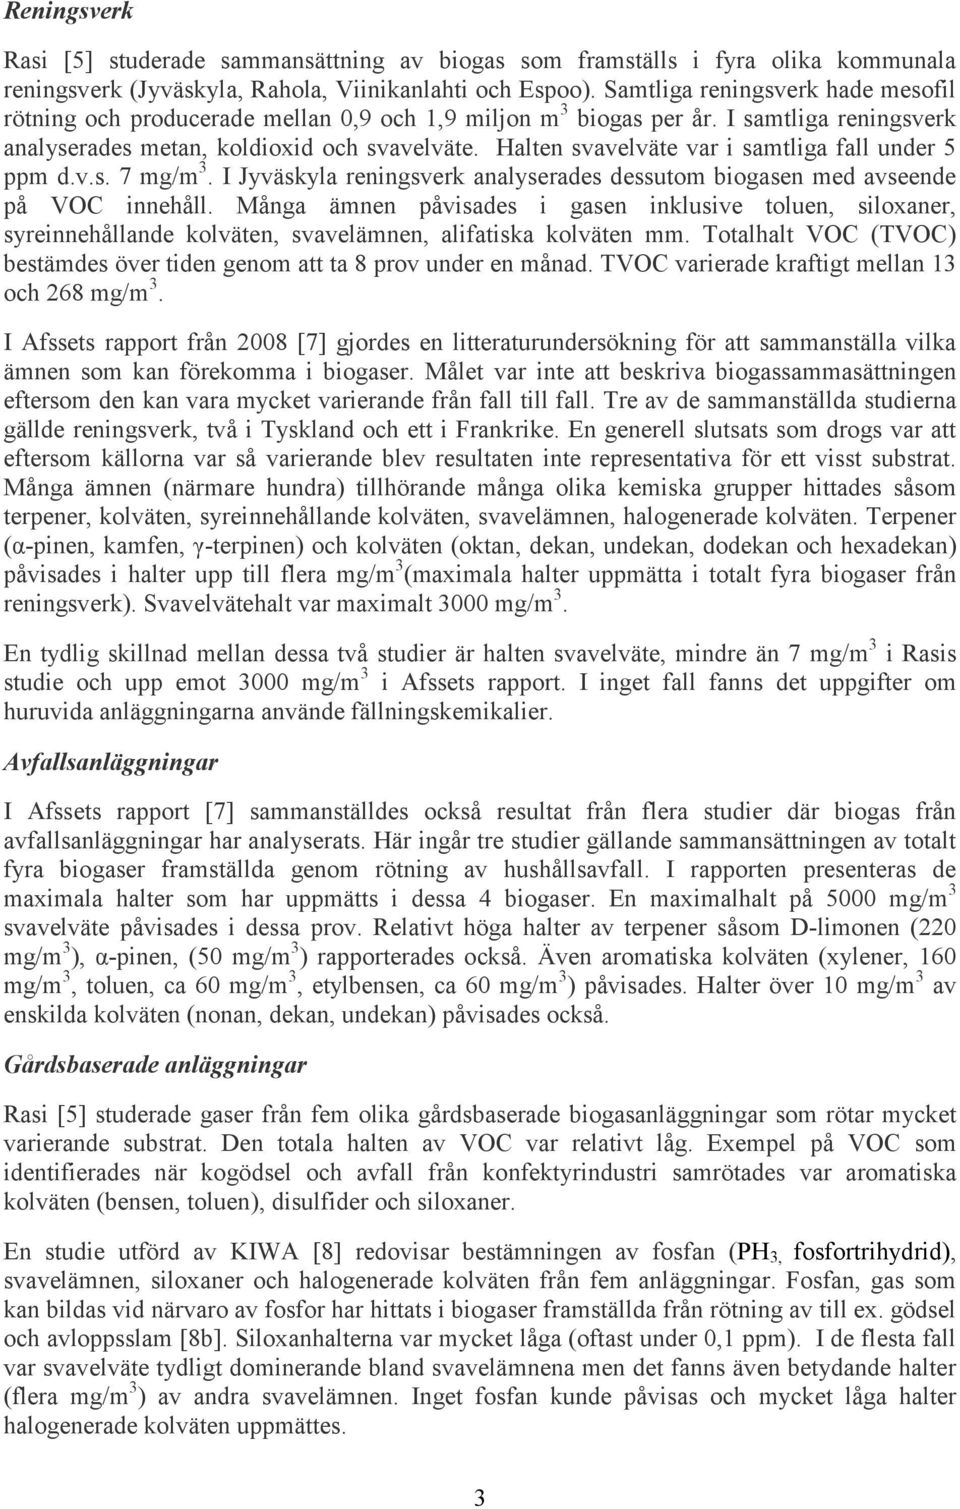 Halten svavelväte var i samtliga fall under 5 ppm d.v.s. 7 mg/m 3. I Jyväskyla reningsverk analyserades dessutom biogasen med avseende på VOC innehåll.